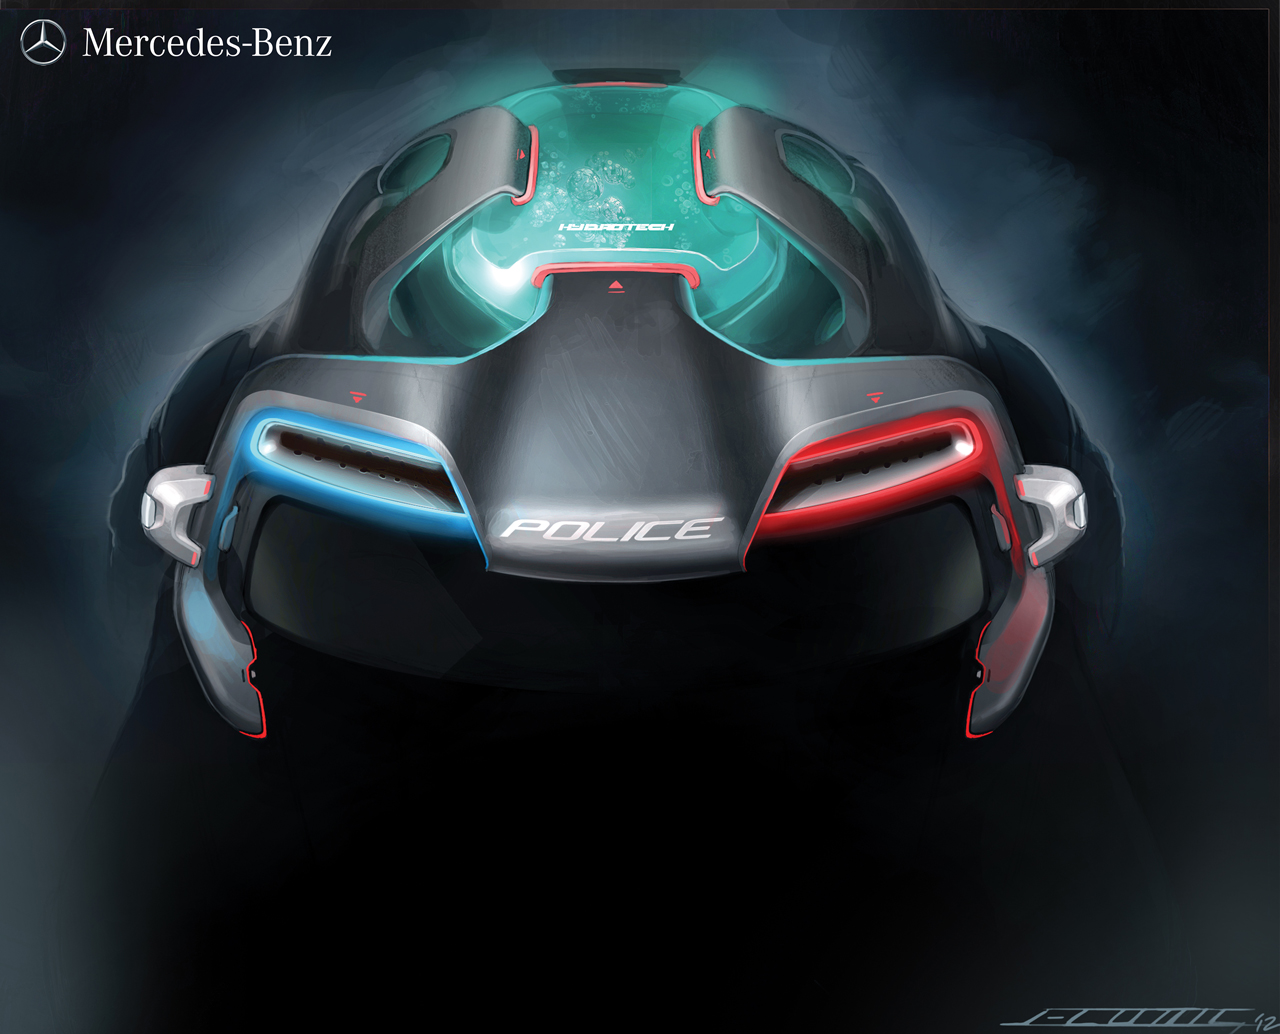 LA Design Challenge (2012): Mercedes-Benz Ener-G-Force